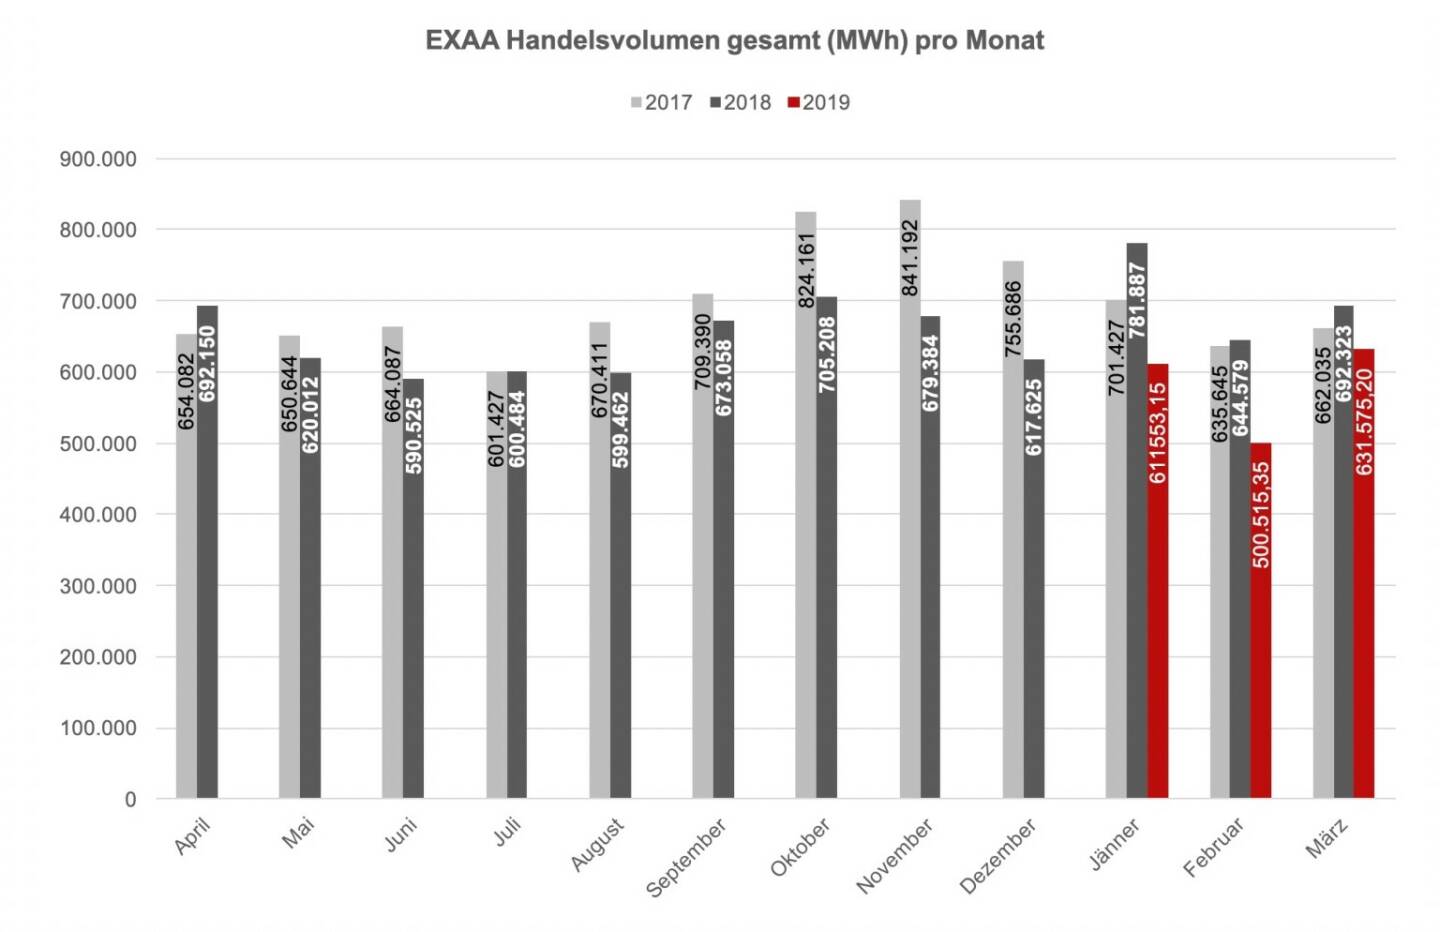 Betrachtet man den österreichischen und deutschen Markt getrennt, so konnte im österreichischen Liefergebiet ein Volumen von 263.374,98 MWh und im deutschen Liefergebiet ein Volumen von 368.200,23 MWh erzielt werden. Somit wurden 41,7 % des Gesamtvolumens im österreichischen Liefergebiet auktioniert.
Die Preise betrugen im März 2019 im Monatsmittel im österreichischen Marktgebiet für das Baseprodukt (00-24 Uhr) 33,15 EUR/MWh und für das Peakprodukt (08-20 Uhr) 36,65 EUR/MWh, im deutschen Marktgebiet betrugen die Preise für das Baseprodukt (00-24 Uhr) 30,50 EUR/MWh und für das Peakprodukt (08-20 Uhr) 33,66 EUR/MWh. 